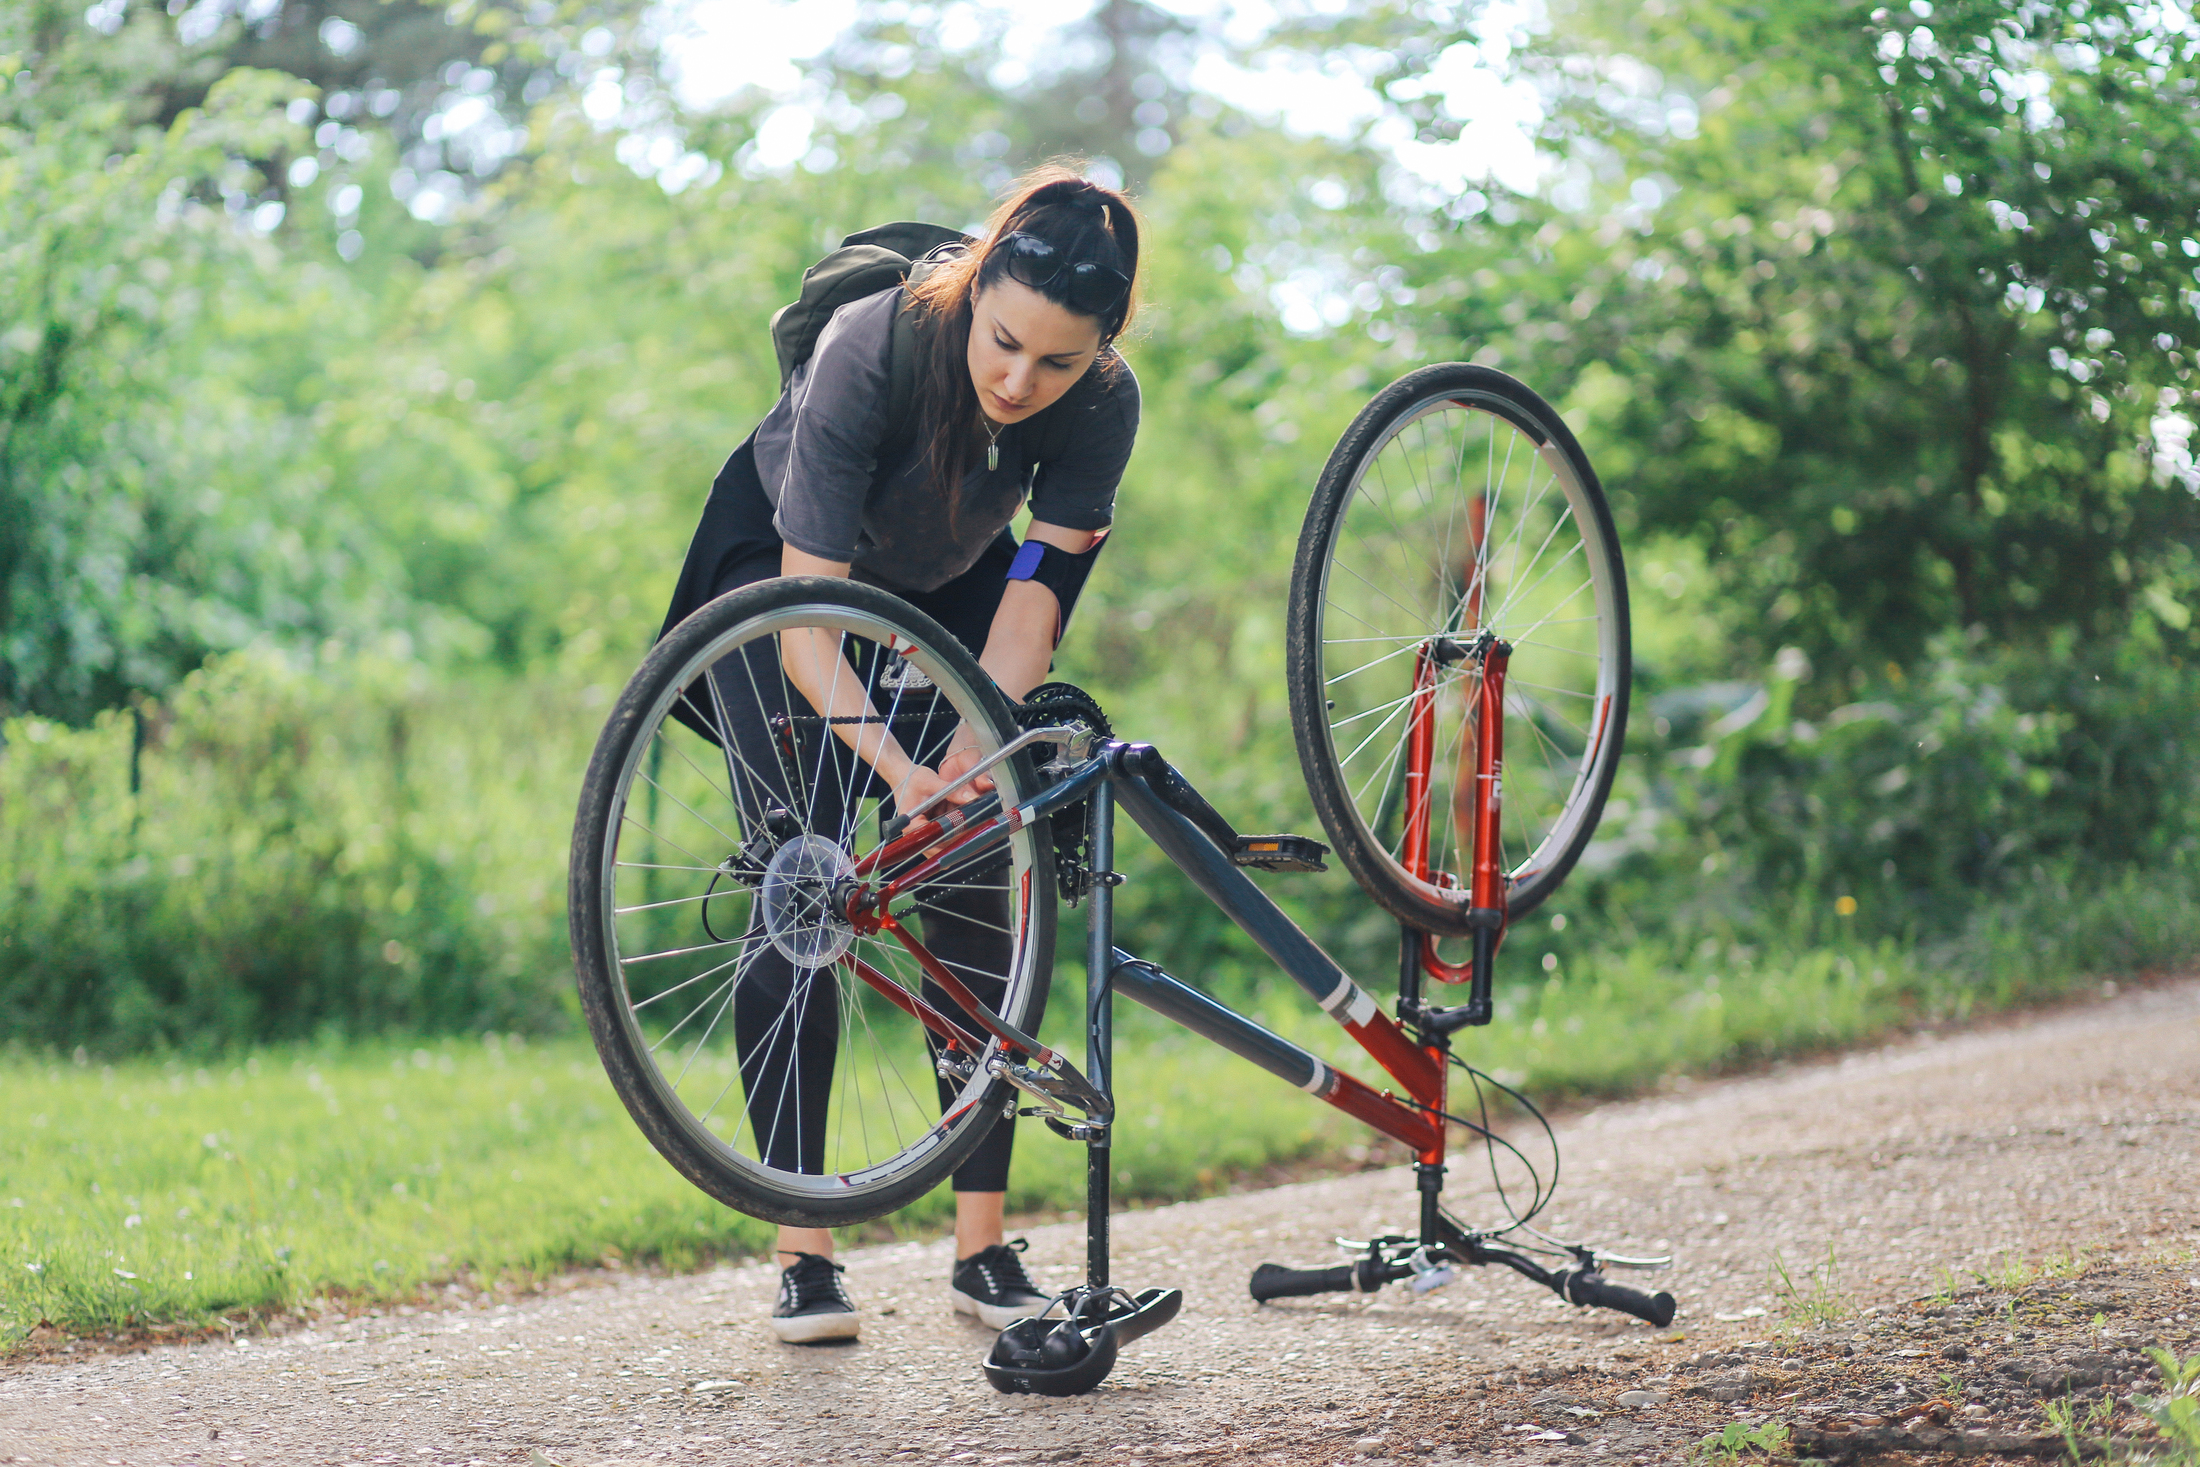 Comment réparer le pneu crevé de mon vélo ?